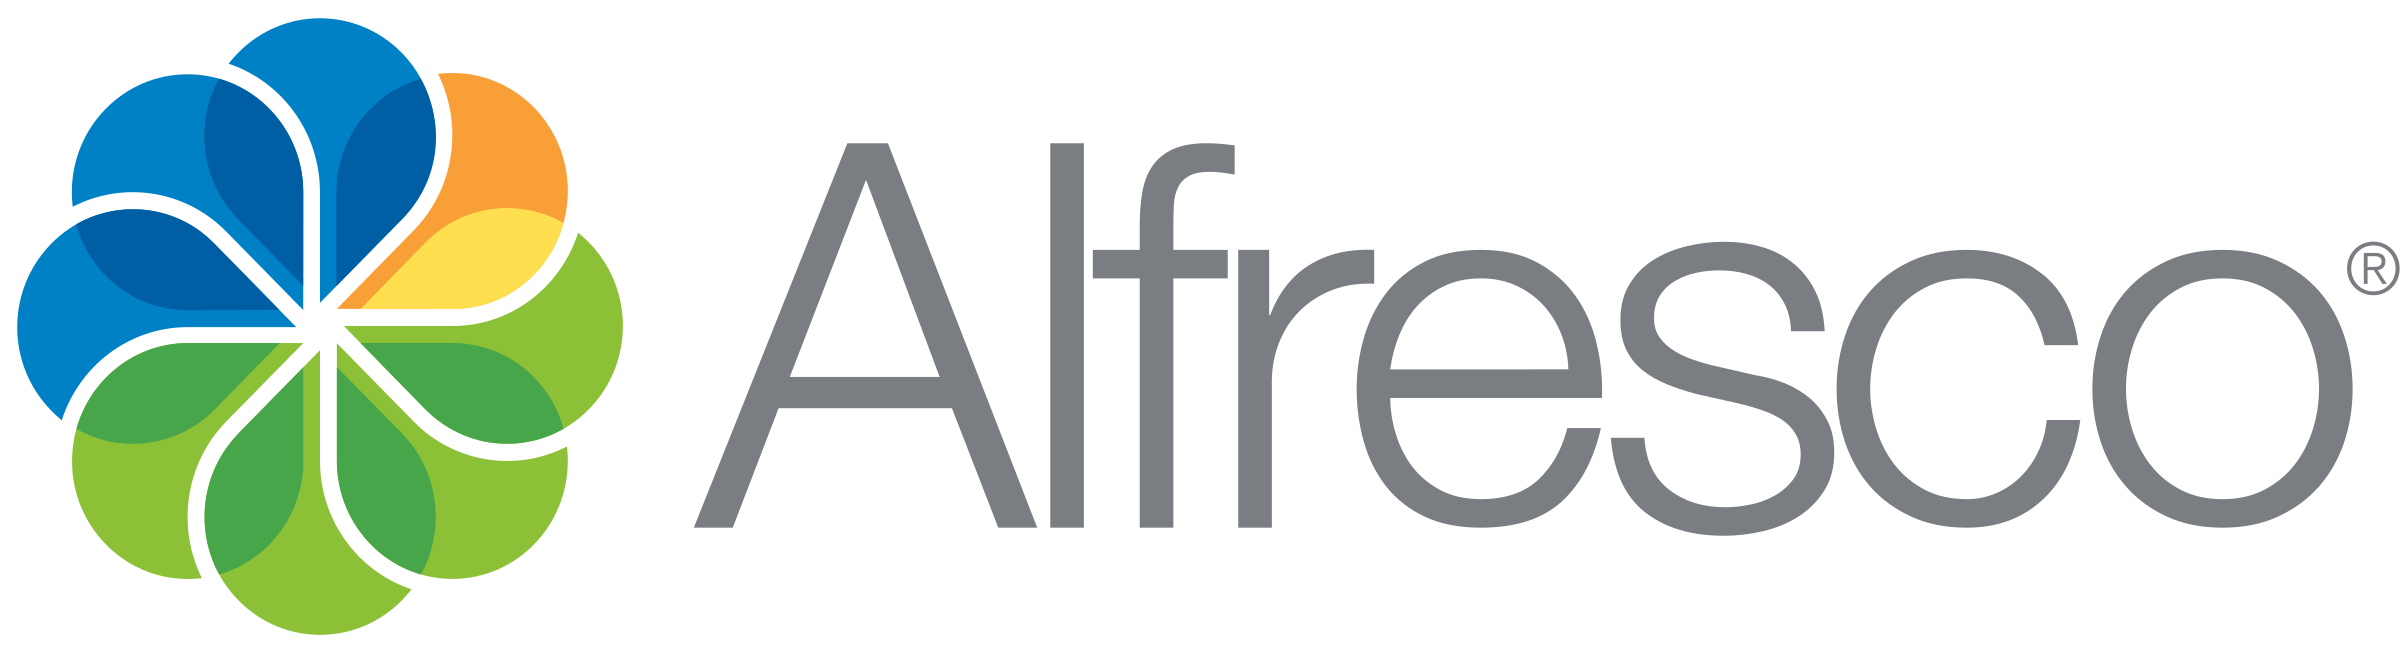 alfresco-logo-png-transparent.png